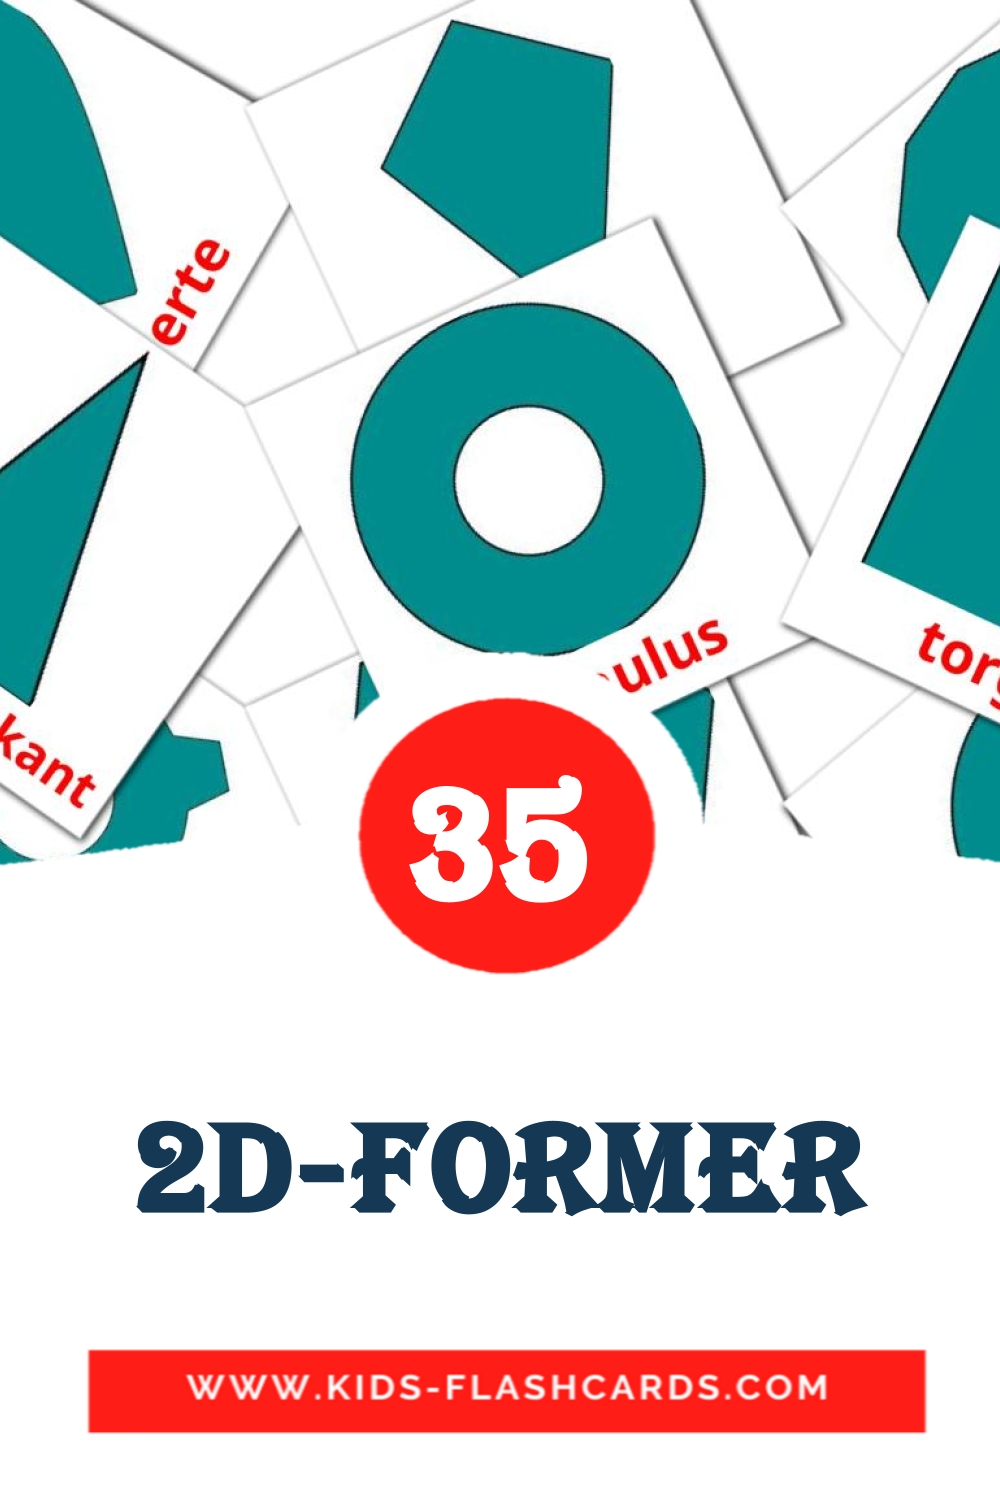 35 tarjetas didacticas de 2D-former para el jardín de infancia en noruego